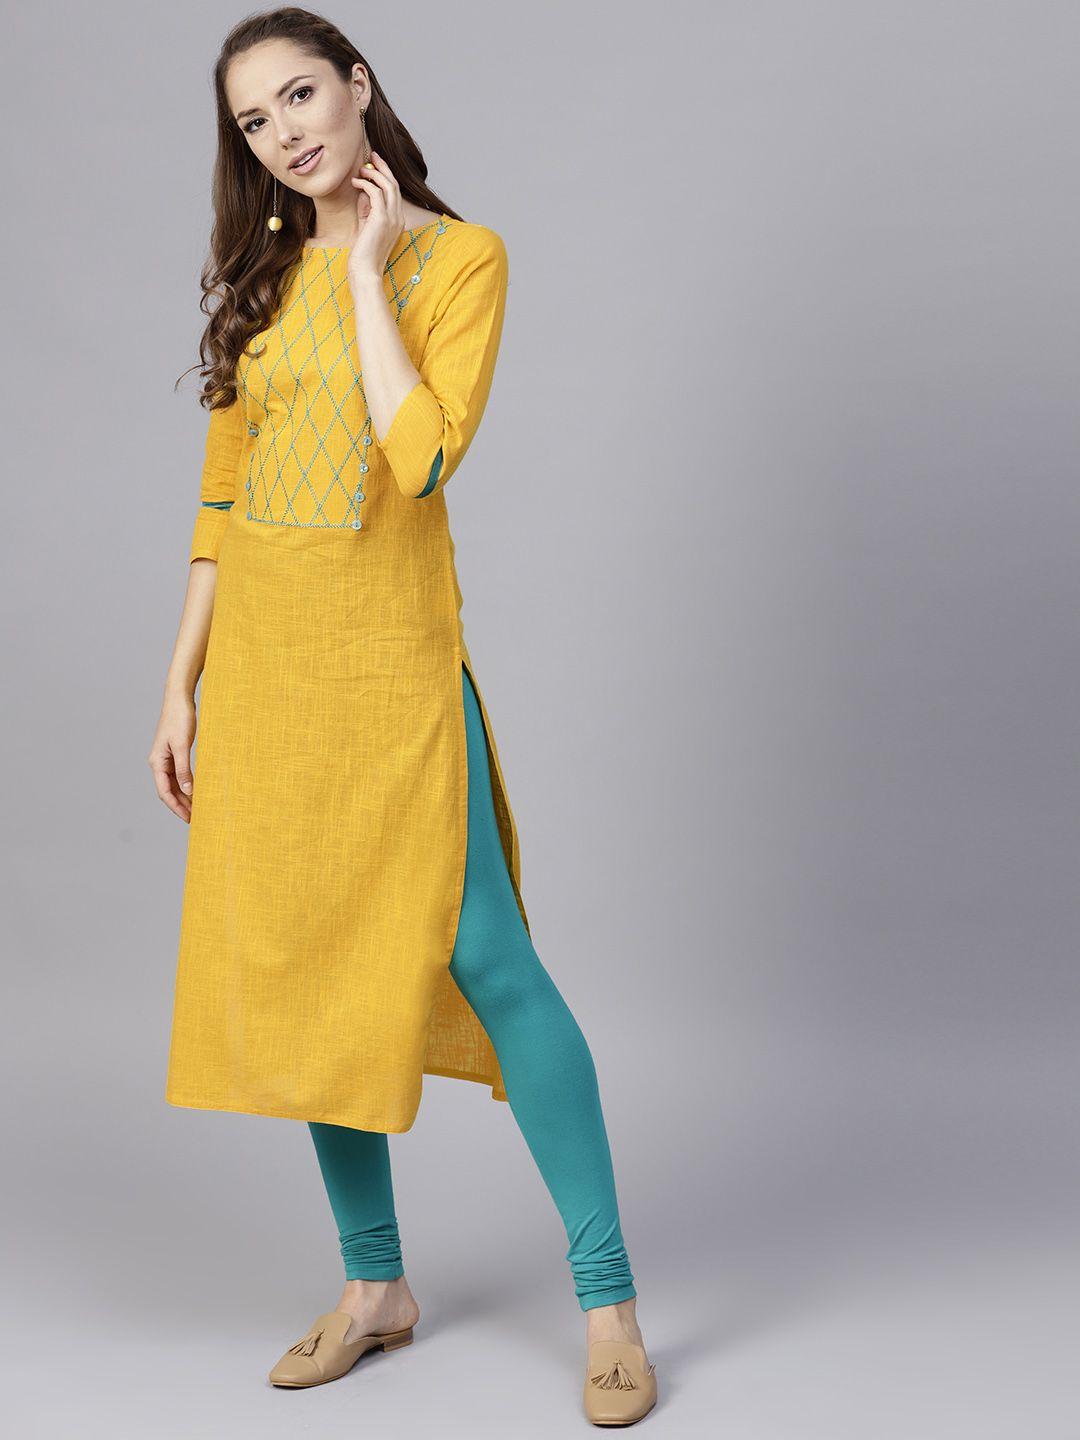 jaipur kurti women yellow yoke design straight kurta